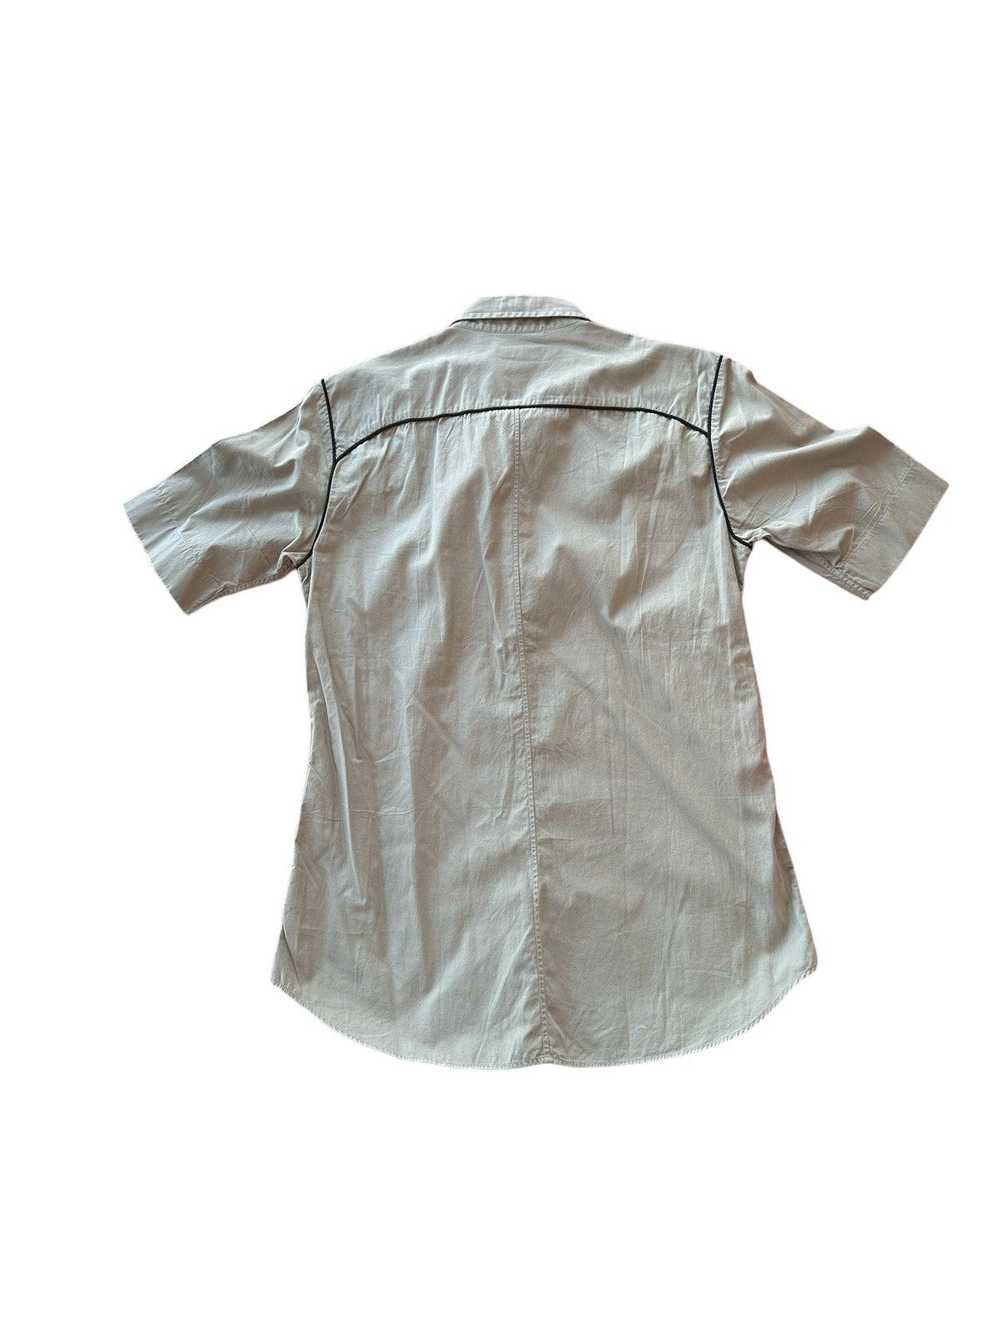 Dries Van Noten Dries Van Noten Button-Up Shirt - image 2